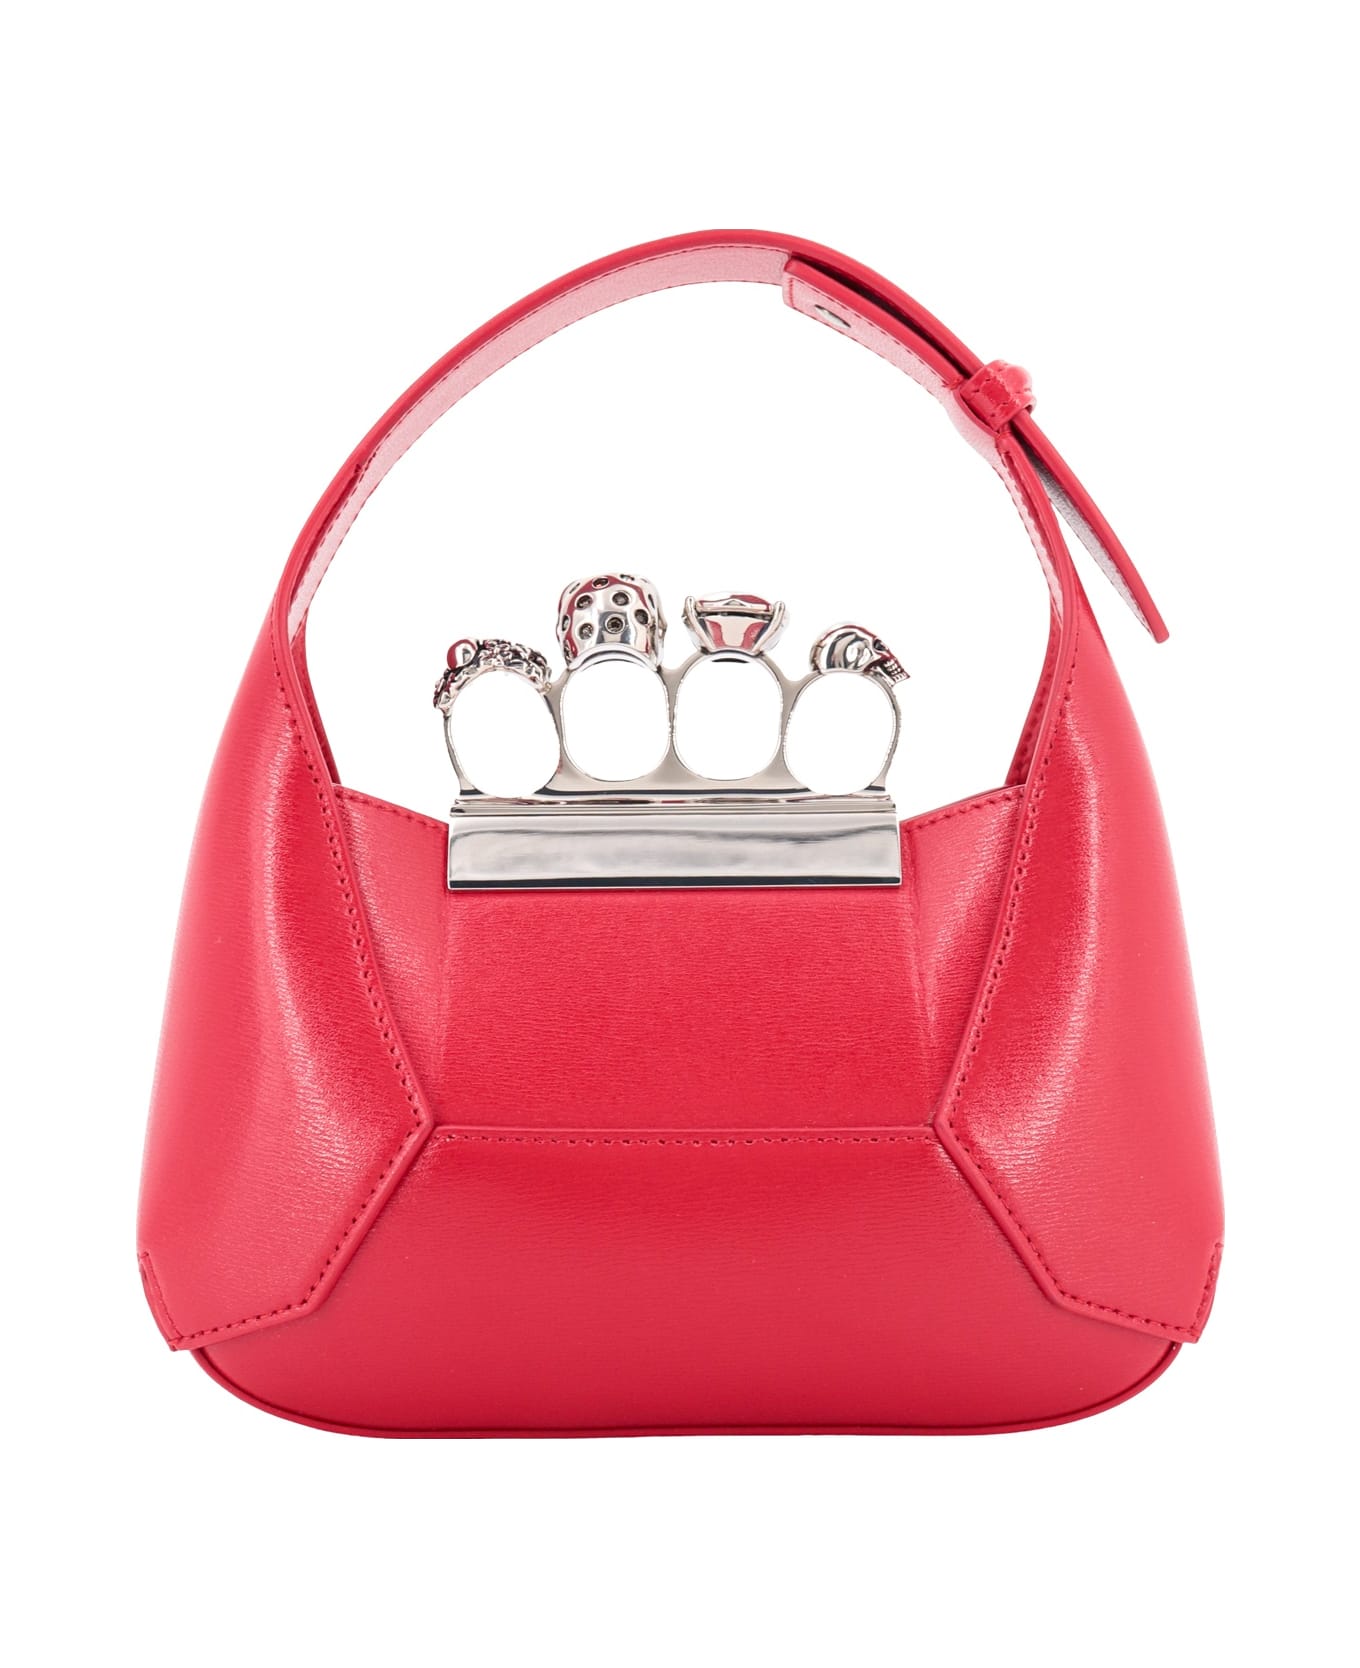 Alexander McQueen Jewelled Handbag - Red